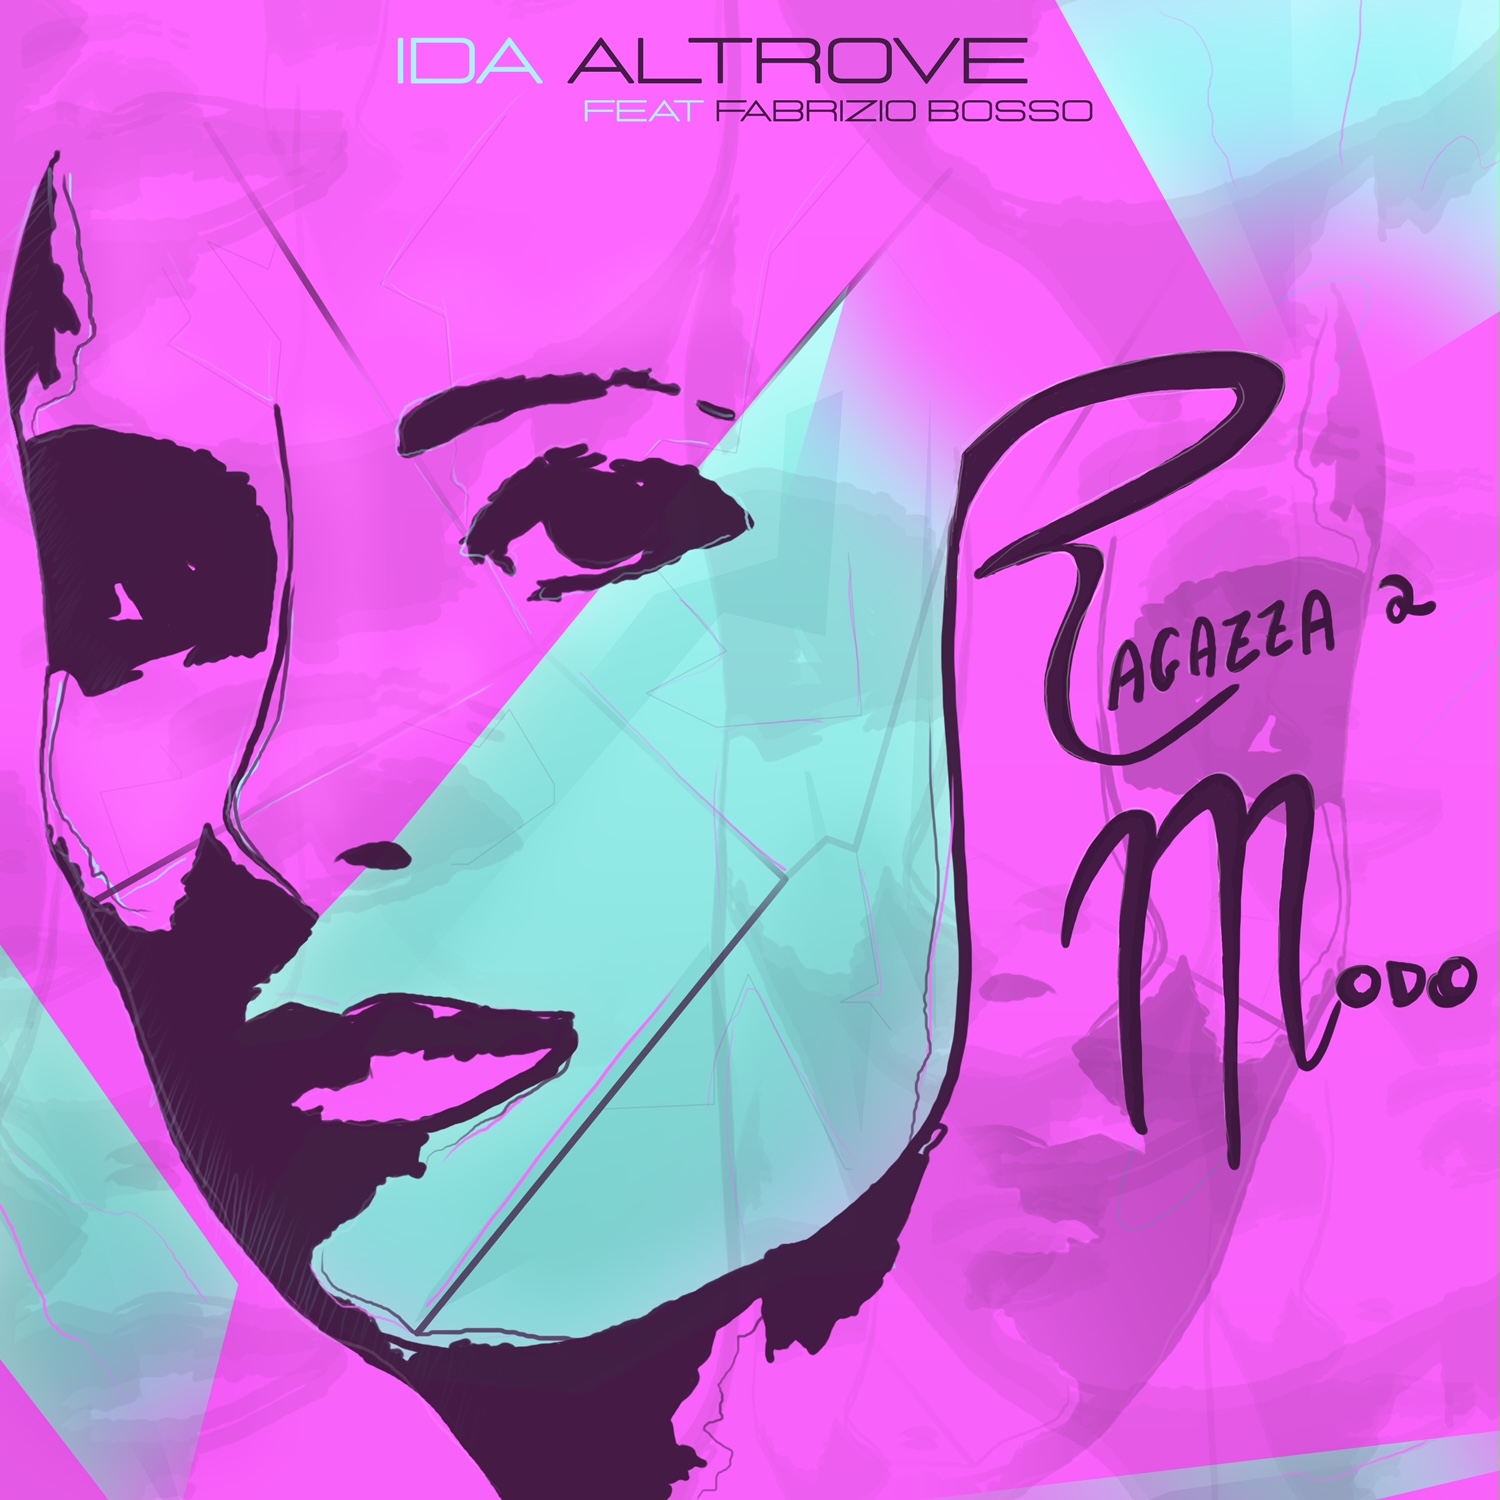 Ida Altrove, “Ragazza a modo” è il nuovo singolo feat. Fabrizio Bosso